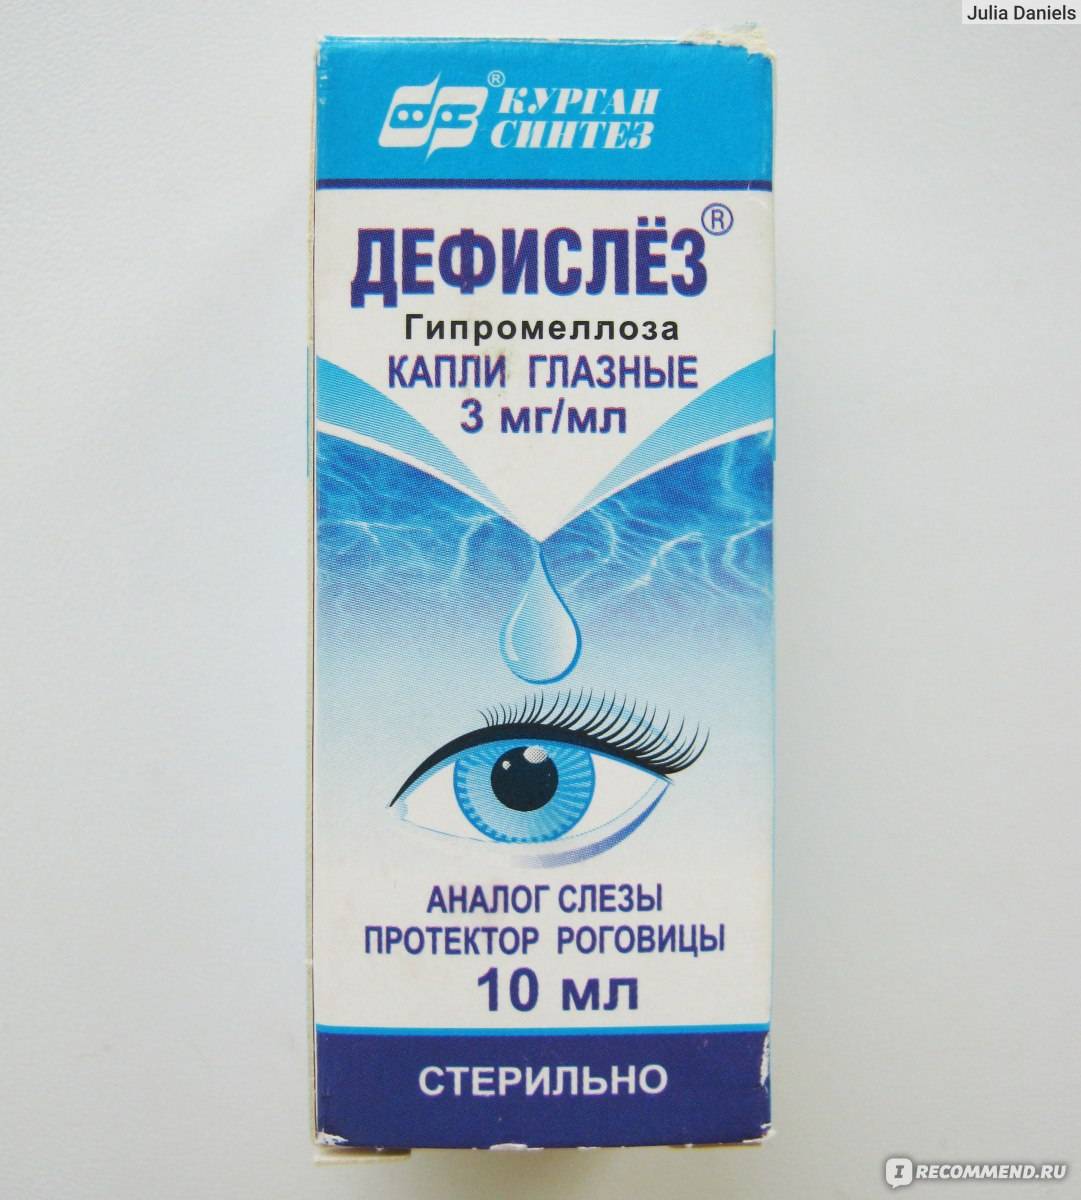 Дешёвые капли для глаз: список недорогих, но эффективных препаратов oculistic.ru
дешёвые капли для глаз: список недорогих, но эффективных препаратов